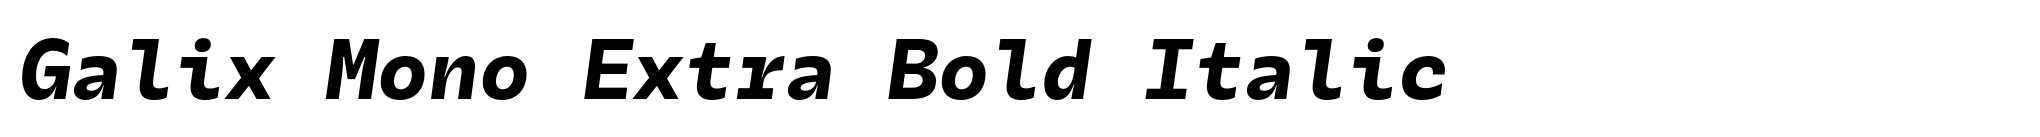 Galix Mono Extra Bold Italic image